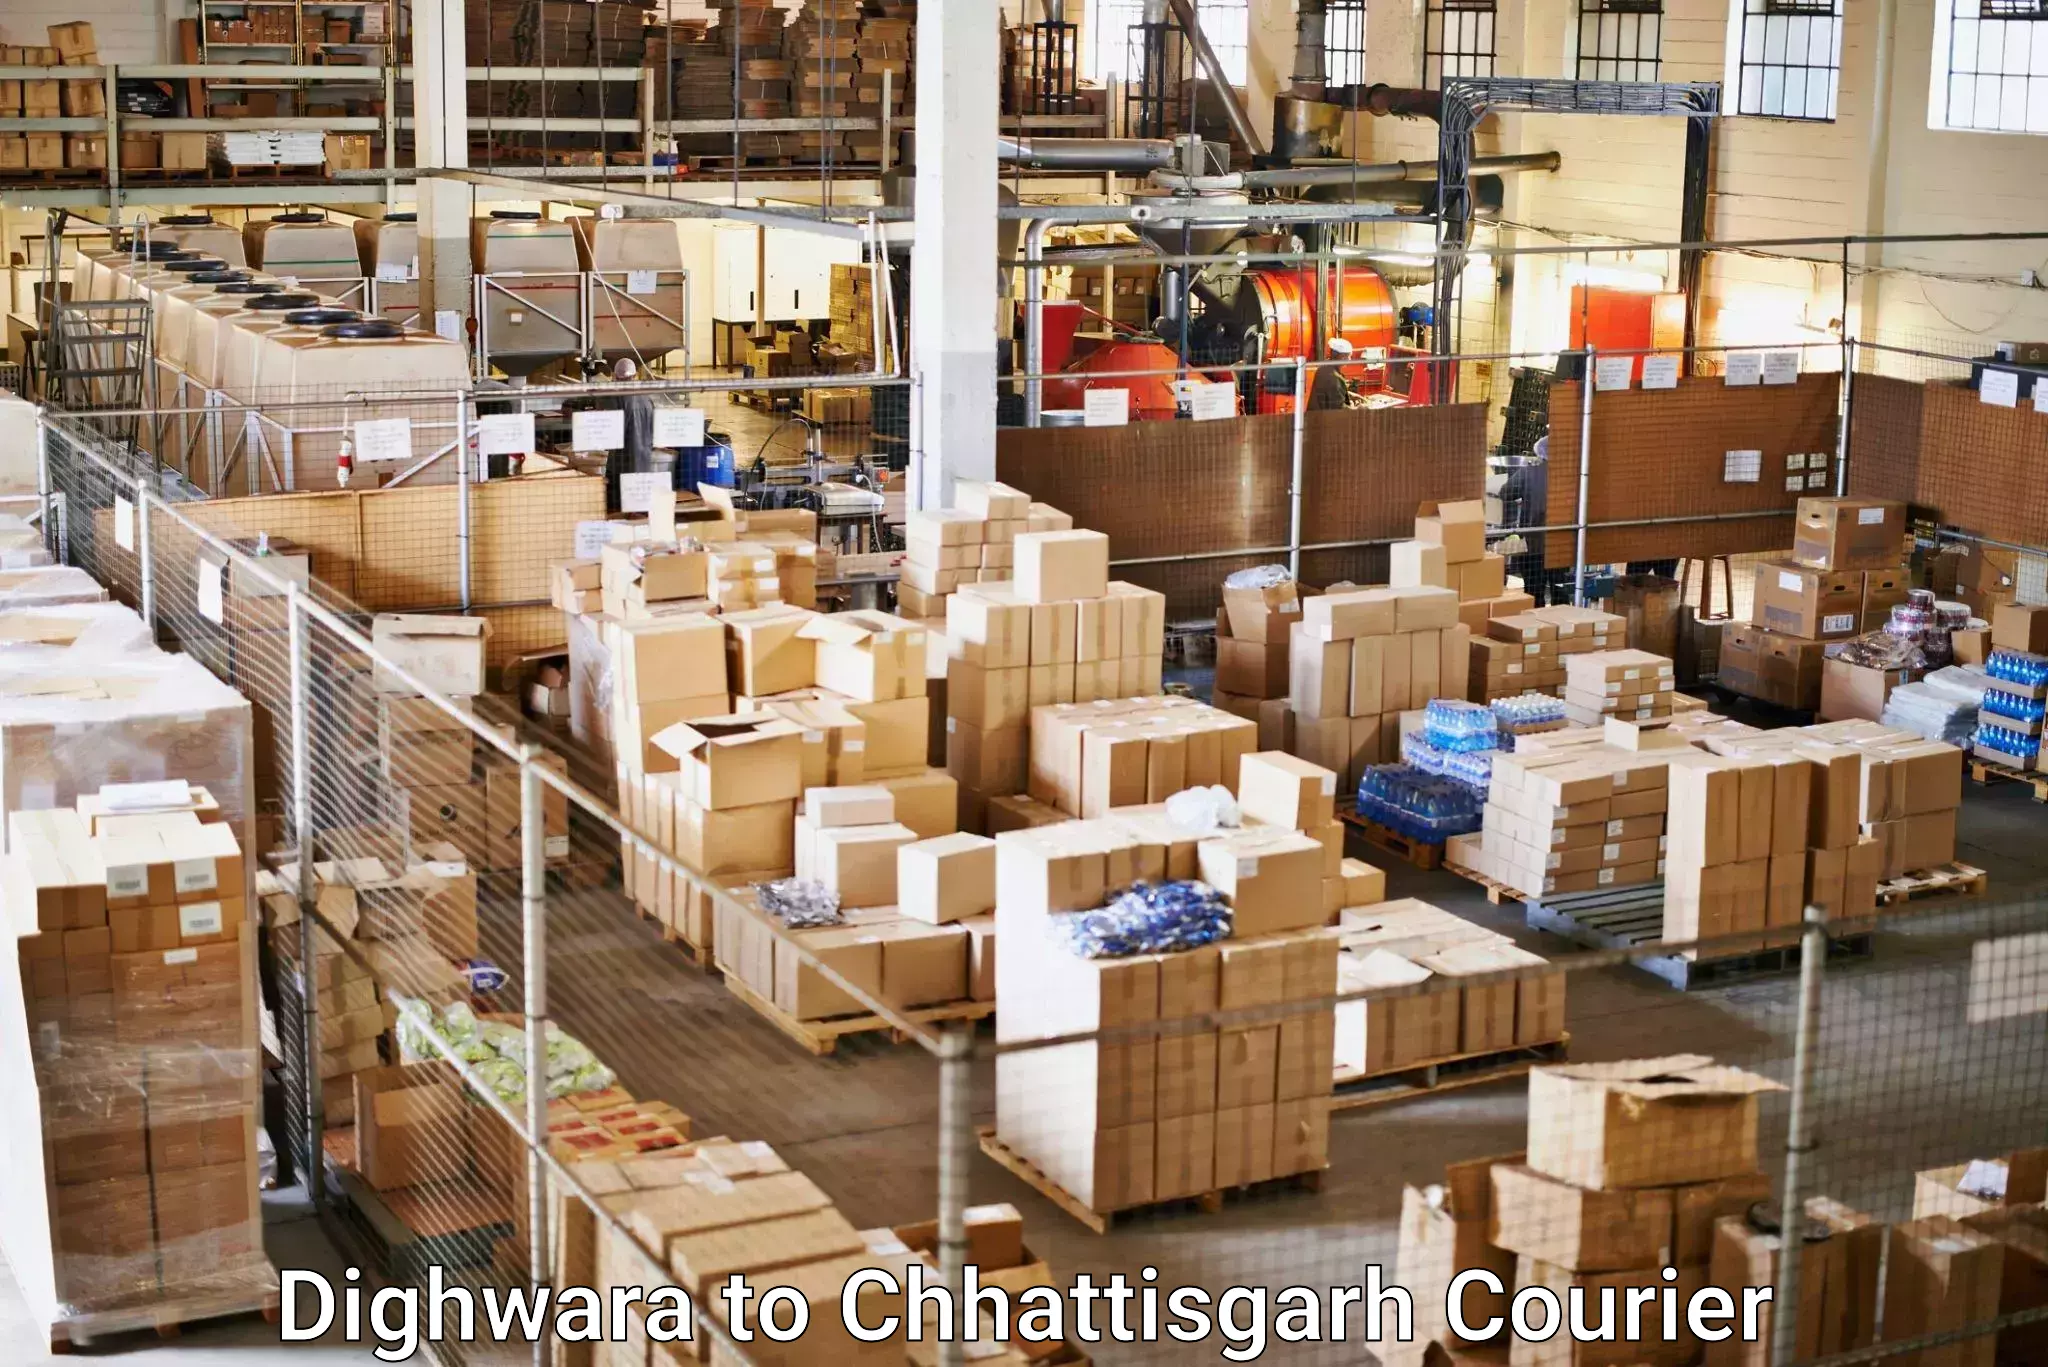 Cross-border shipping Dighwara to Chhattisgarh